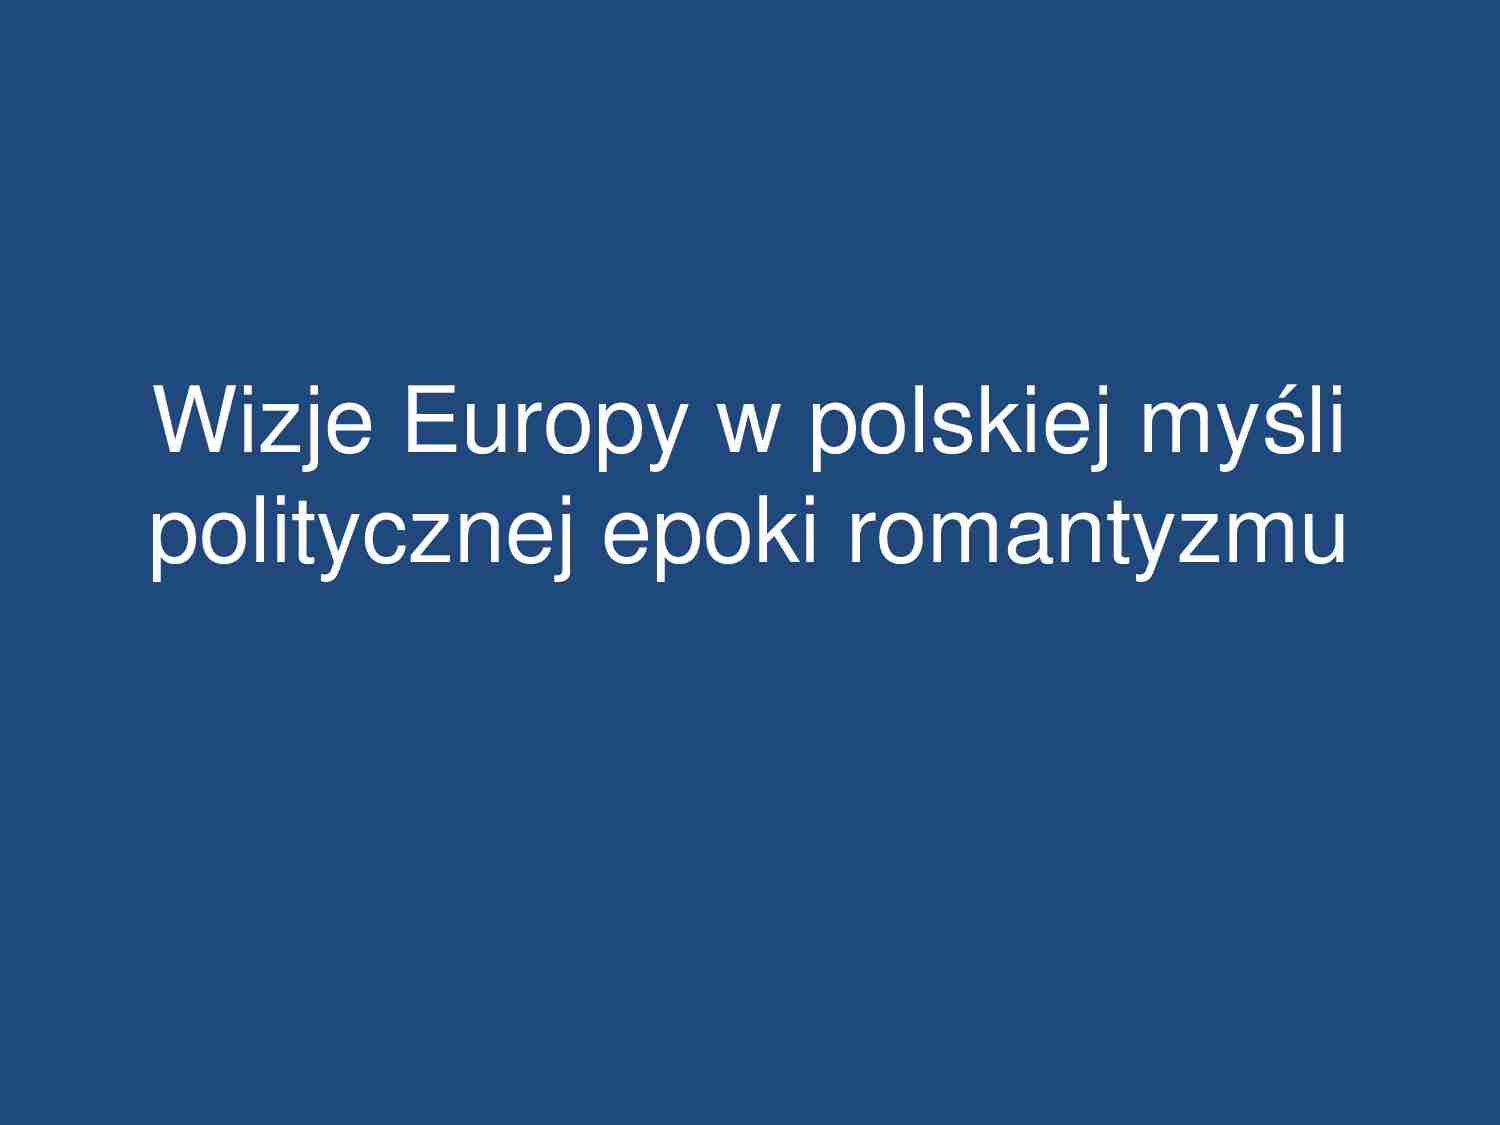 Wizje Europy w polskiej myśli politycznej epoki romantyzmu-prezentacja - strona 1